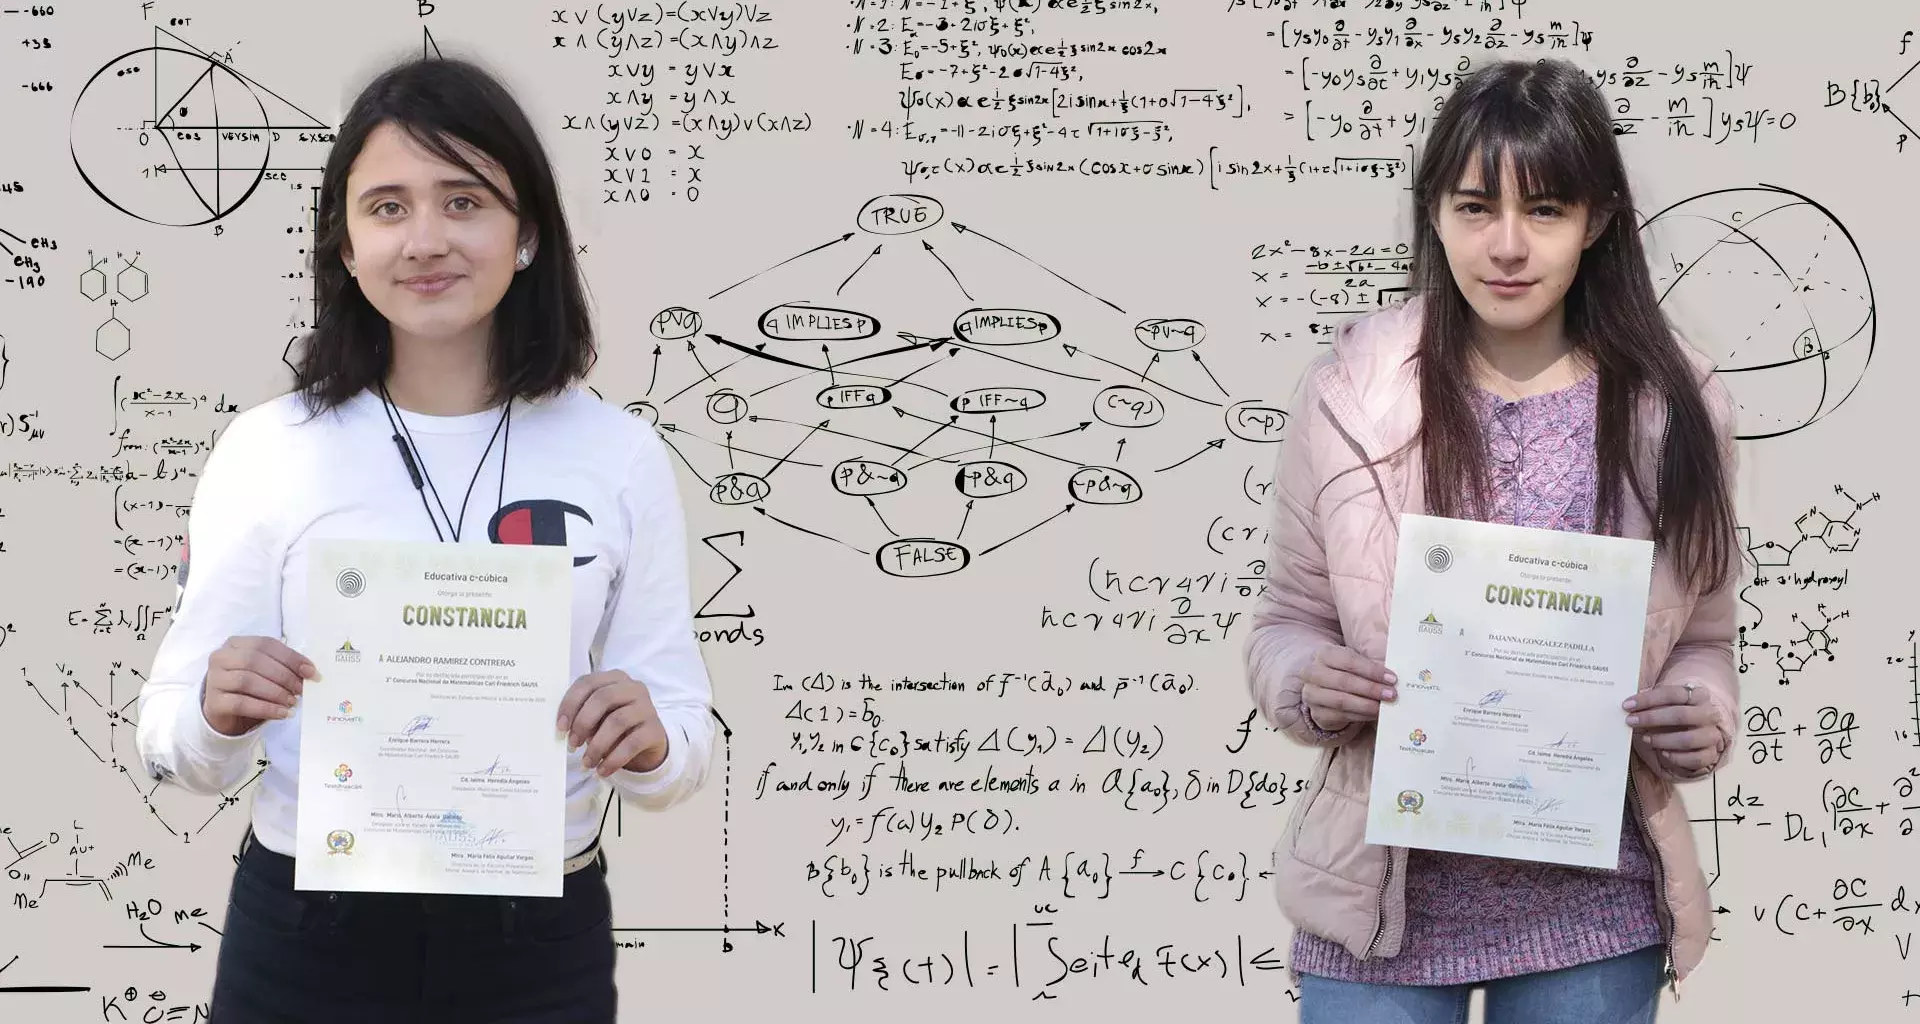 alumnas-ganan-oro-en-olimpiada-de-matematicas-zacatecas